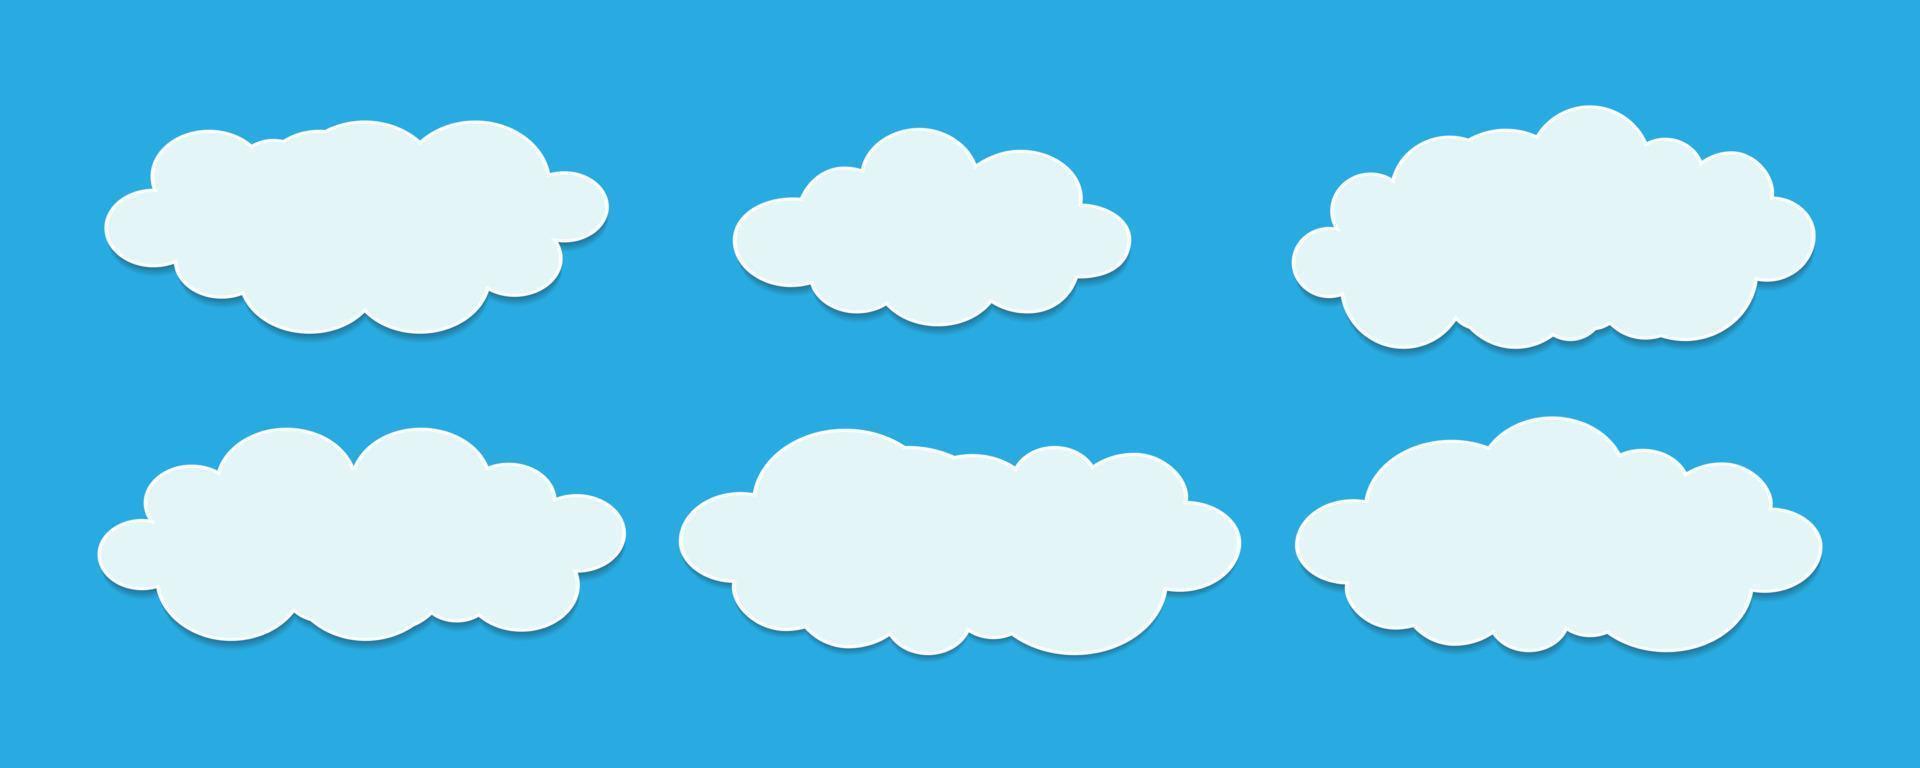 conjunto de nuvens brancas com formas diferentes, vetor livre